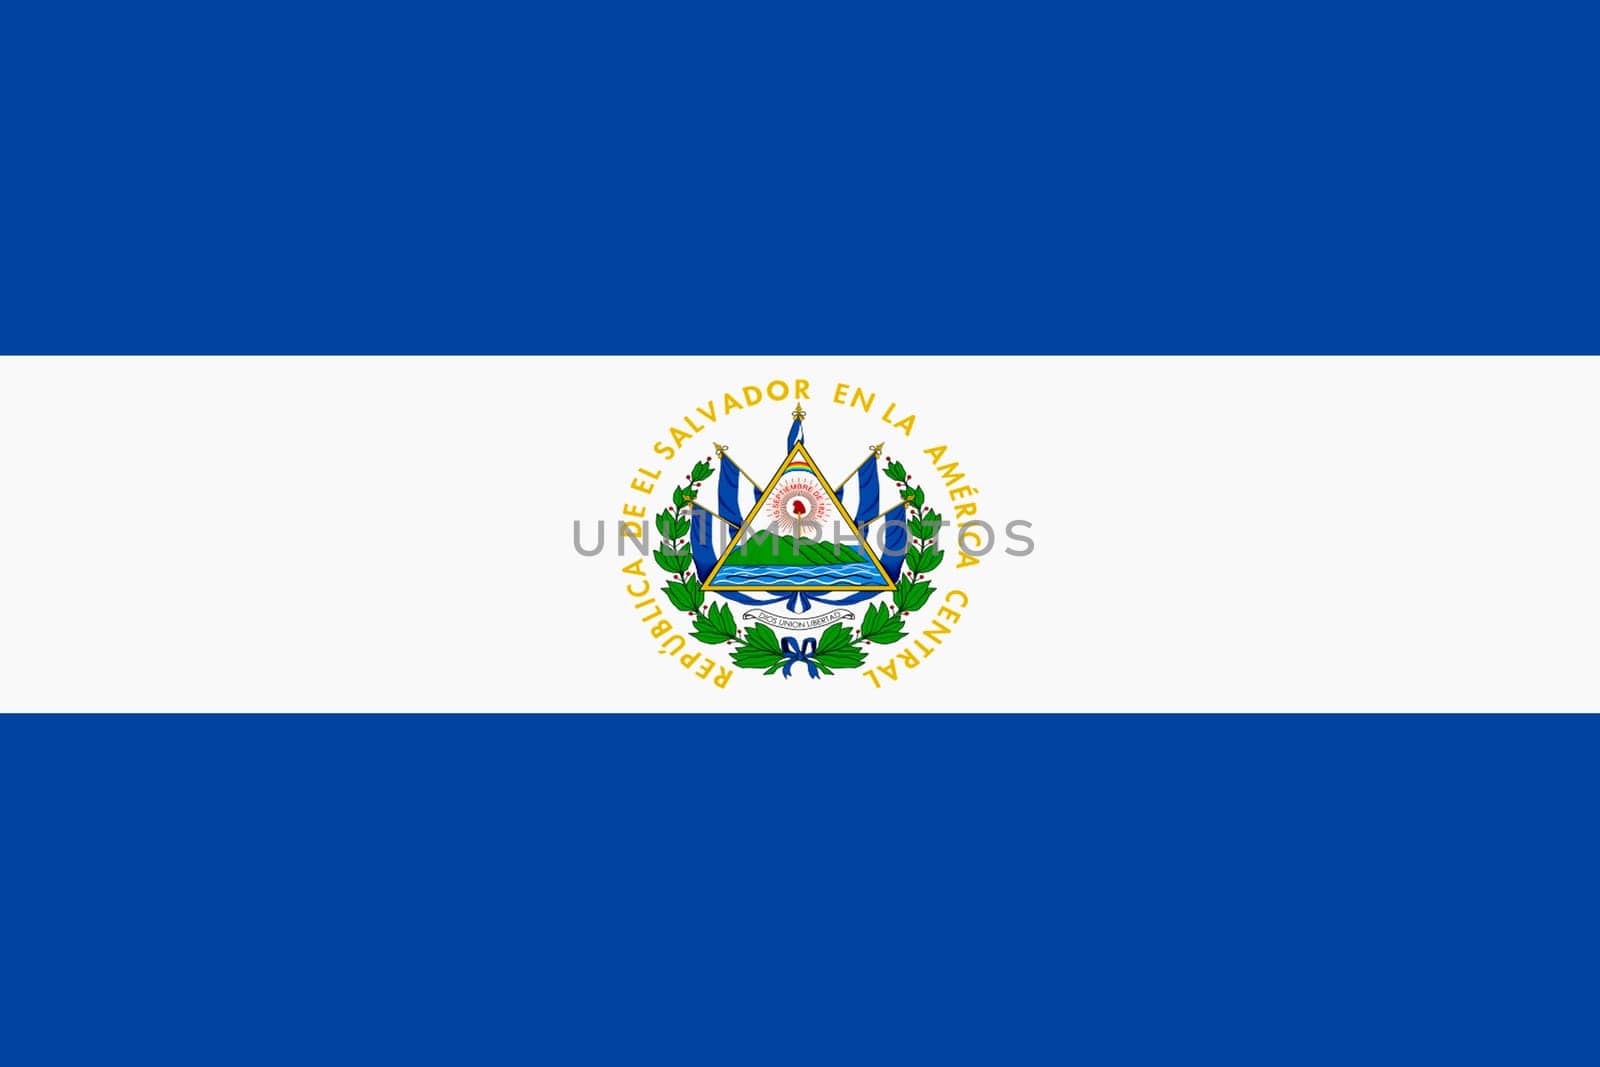 An El Salvador flag background illustration